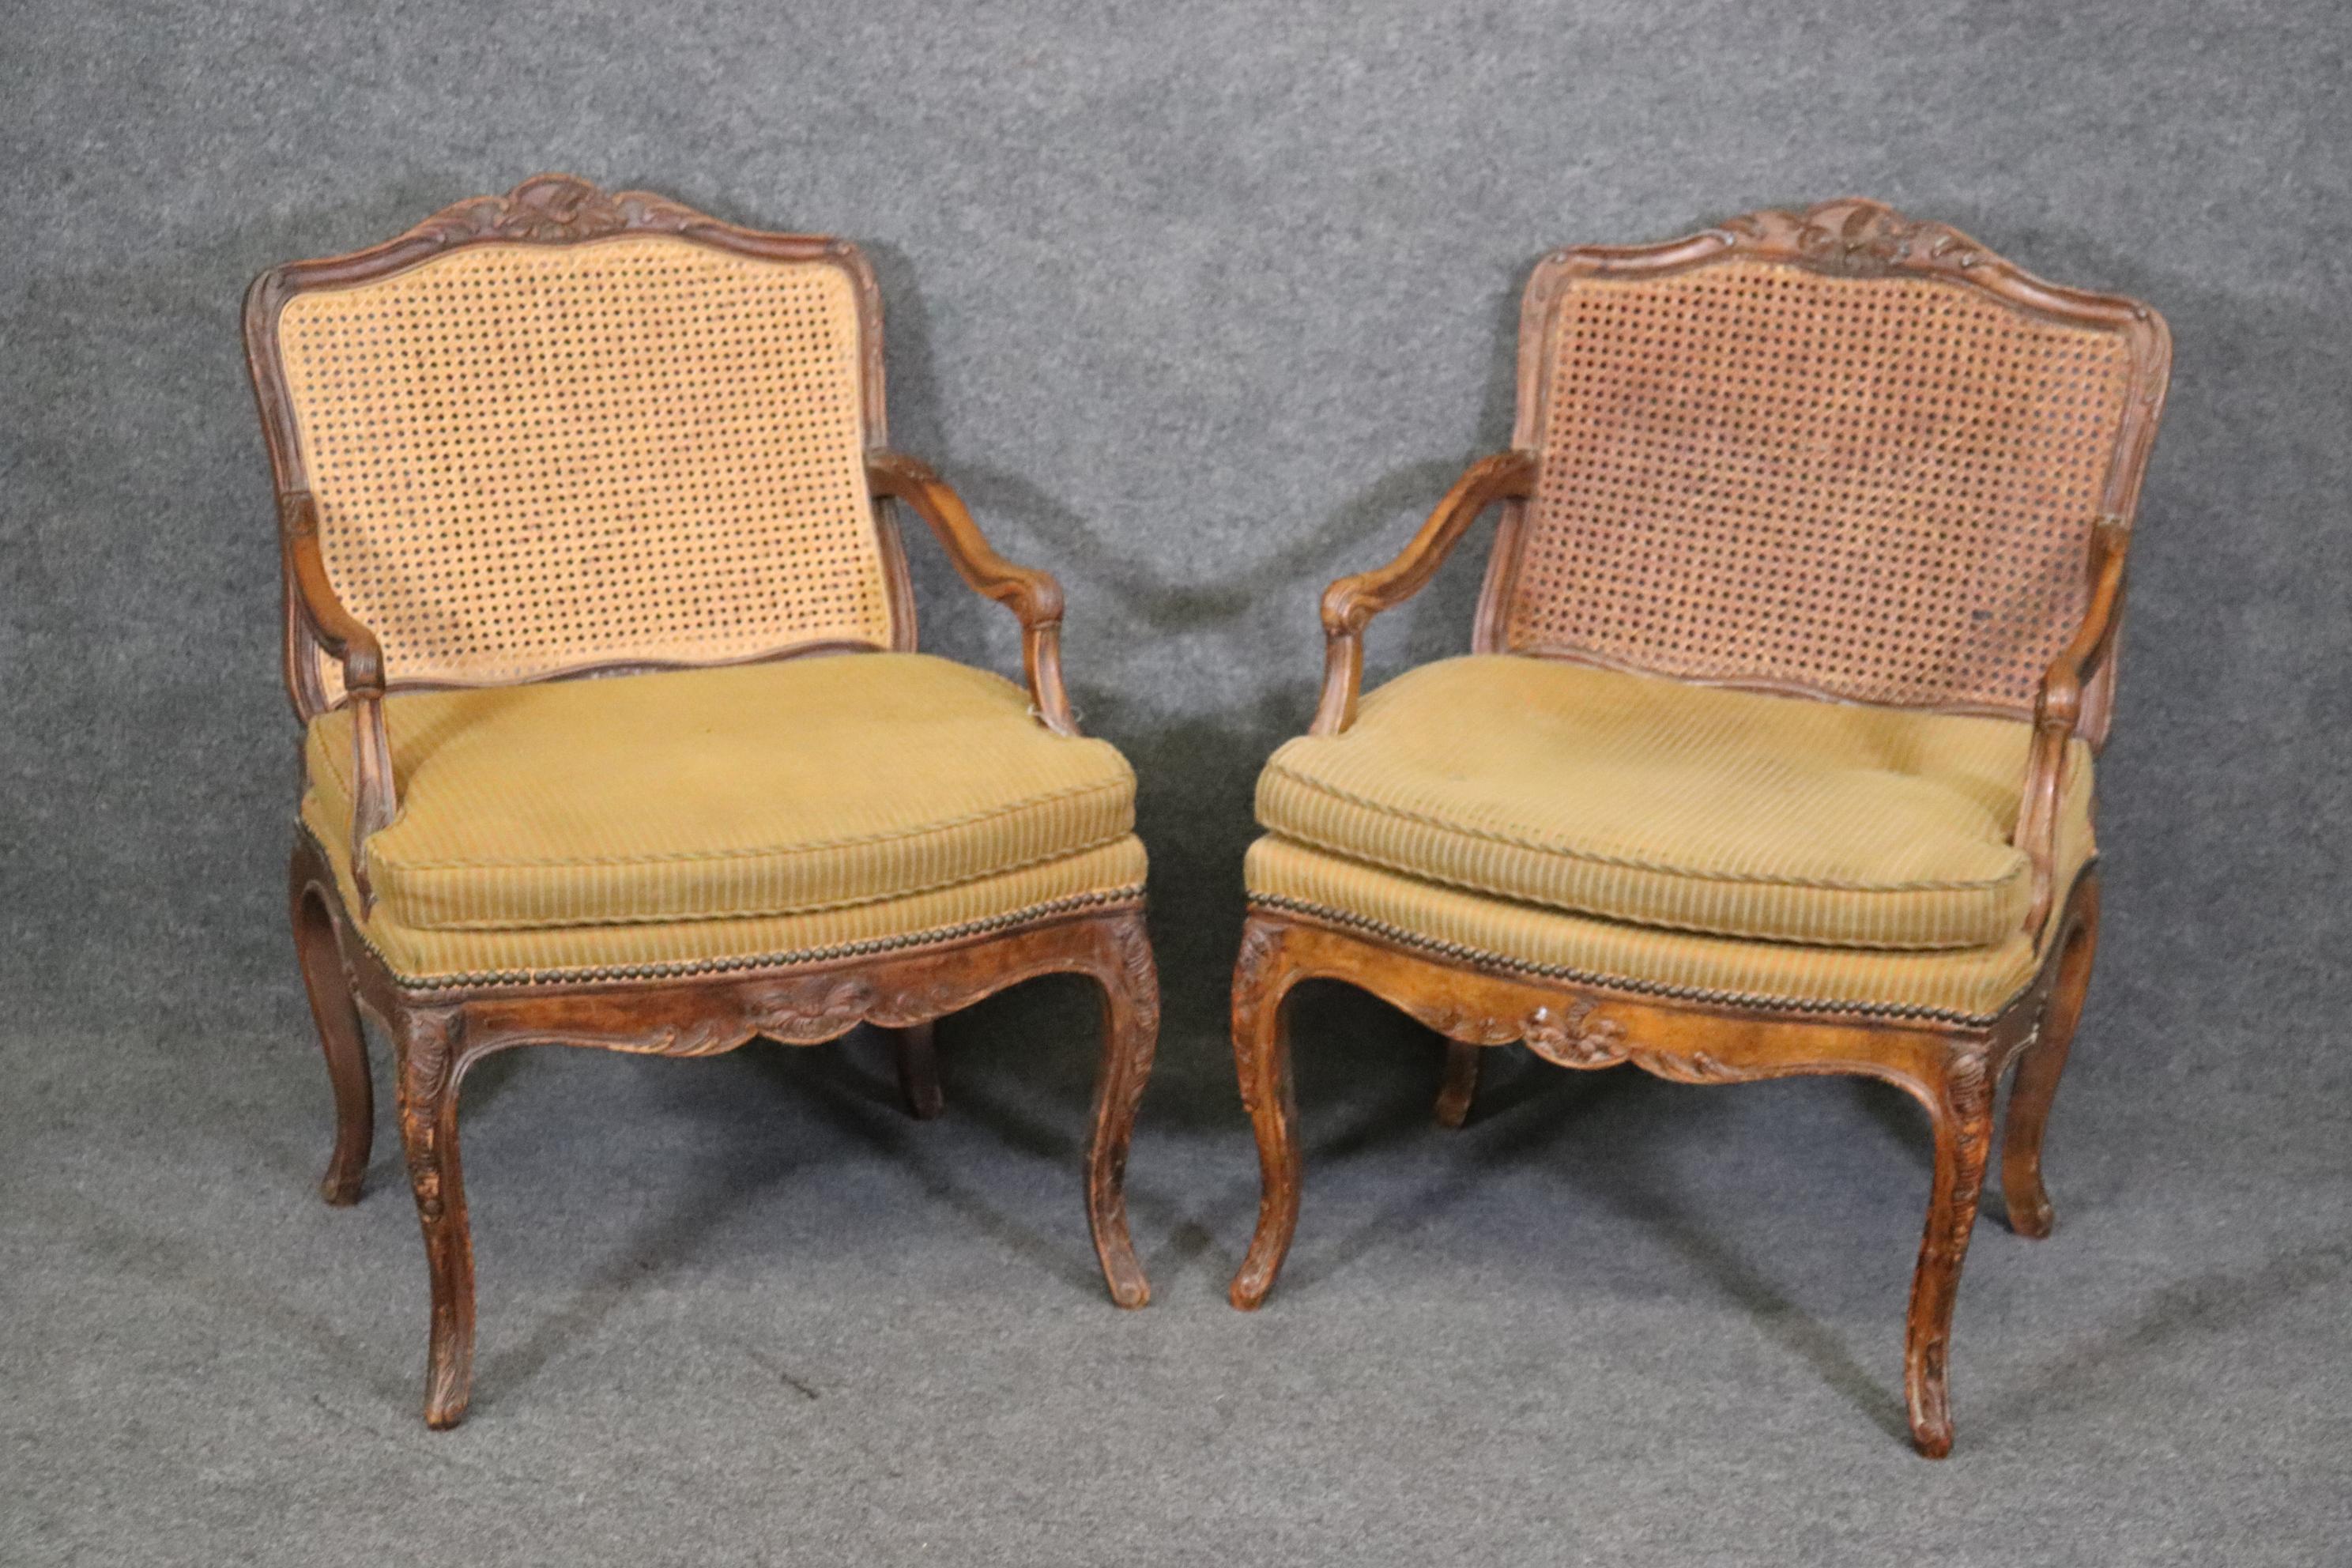 Das sind schöne Stühle. Sie haben einen leichten Verlust an Schilfrohr. Die Rahmen sind aus geschnitztem Nussbaumholz im Stil von Louis XV. Knöpfe fehlen an der Polsterung. Die Stühle sind 33,75 hoch x 24,5 breit x 27,25 tief und haben eine Sitzhöhe